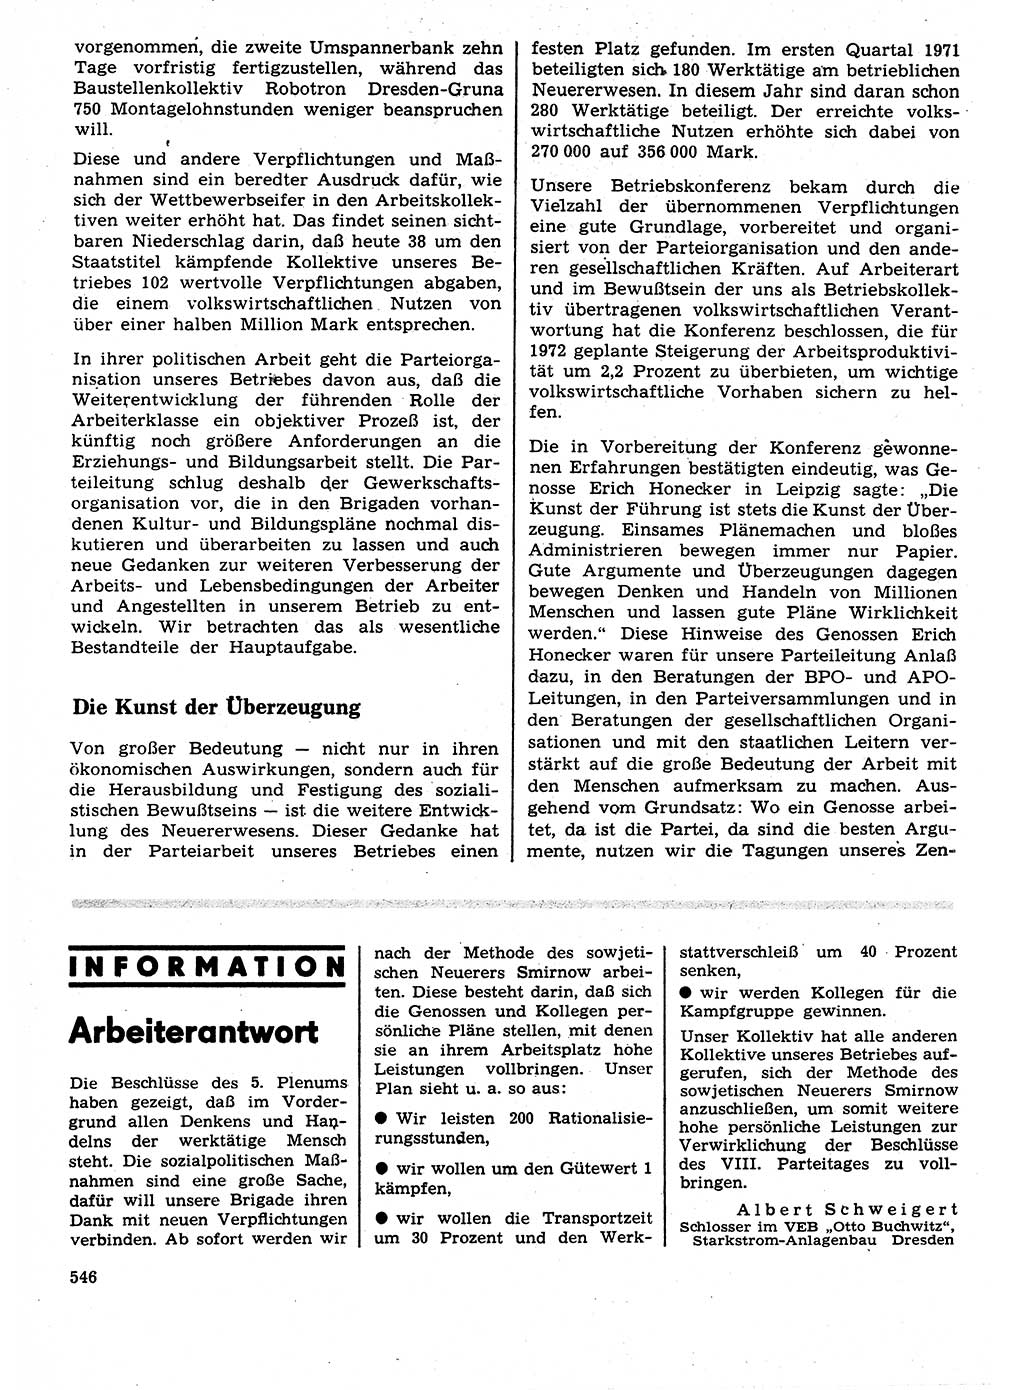 Neuer Weg (NW), Organ des Zentralkomitees (ZK) der SED (Sozialistische Einheitspartei Deutschlands) für Fragen des Parteilebens, 27. Jahrgang [Deutsche Demokratische Republik (DDR)] 1972, Seite 546 (NW ZK SED DDR 1972, S. 546)